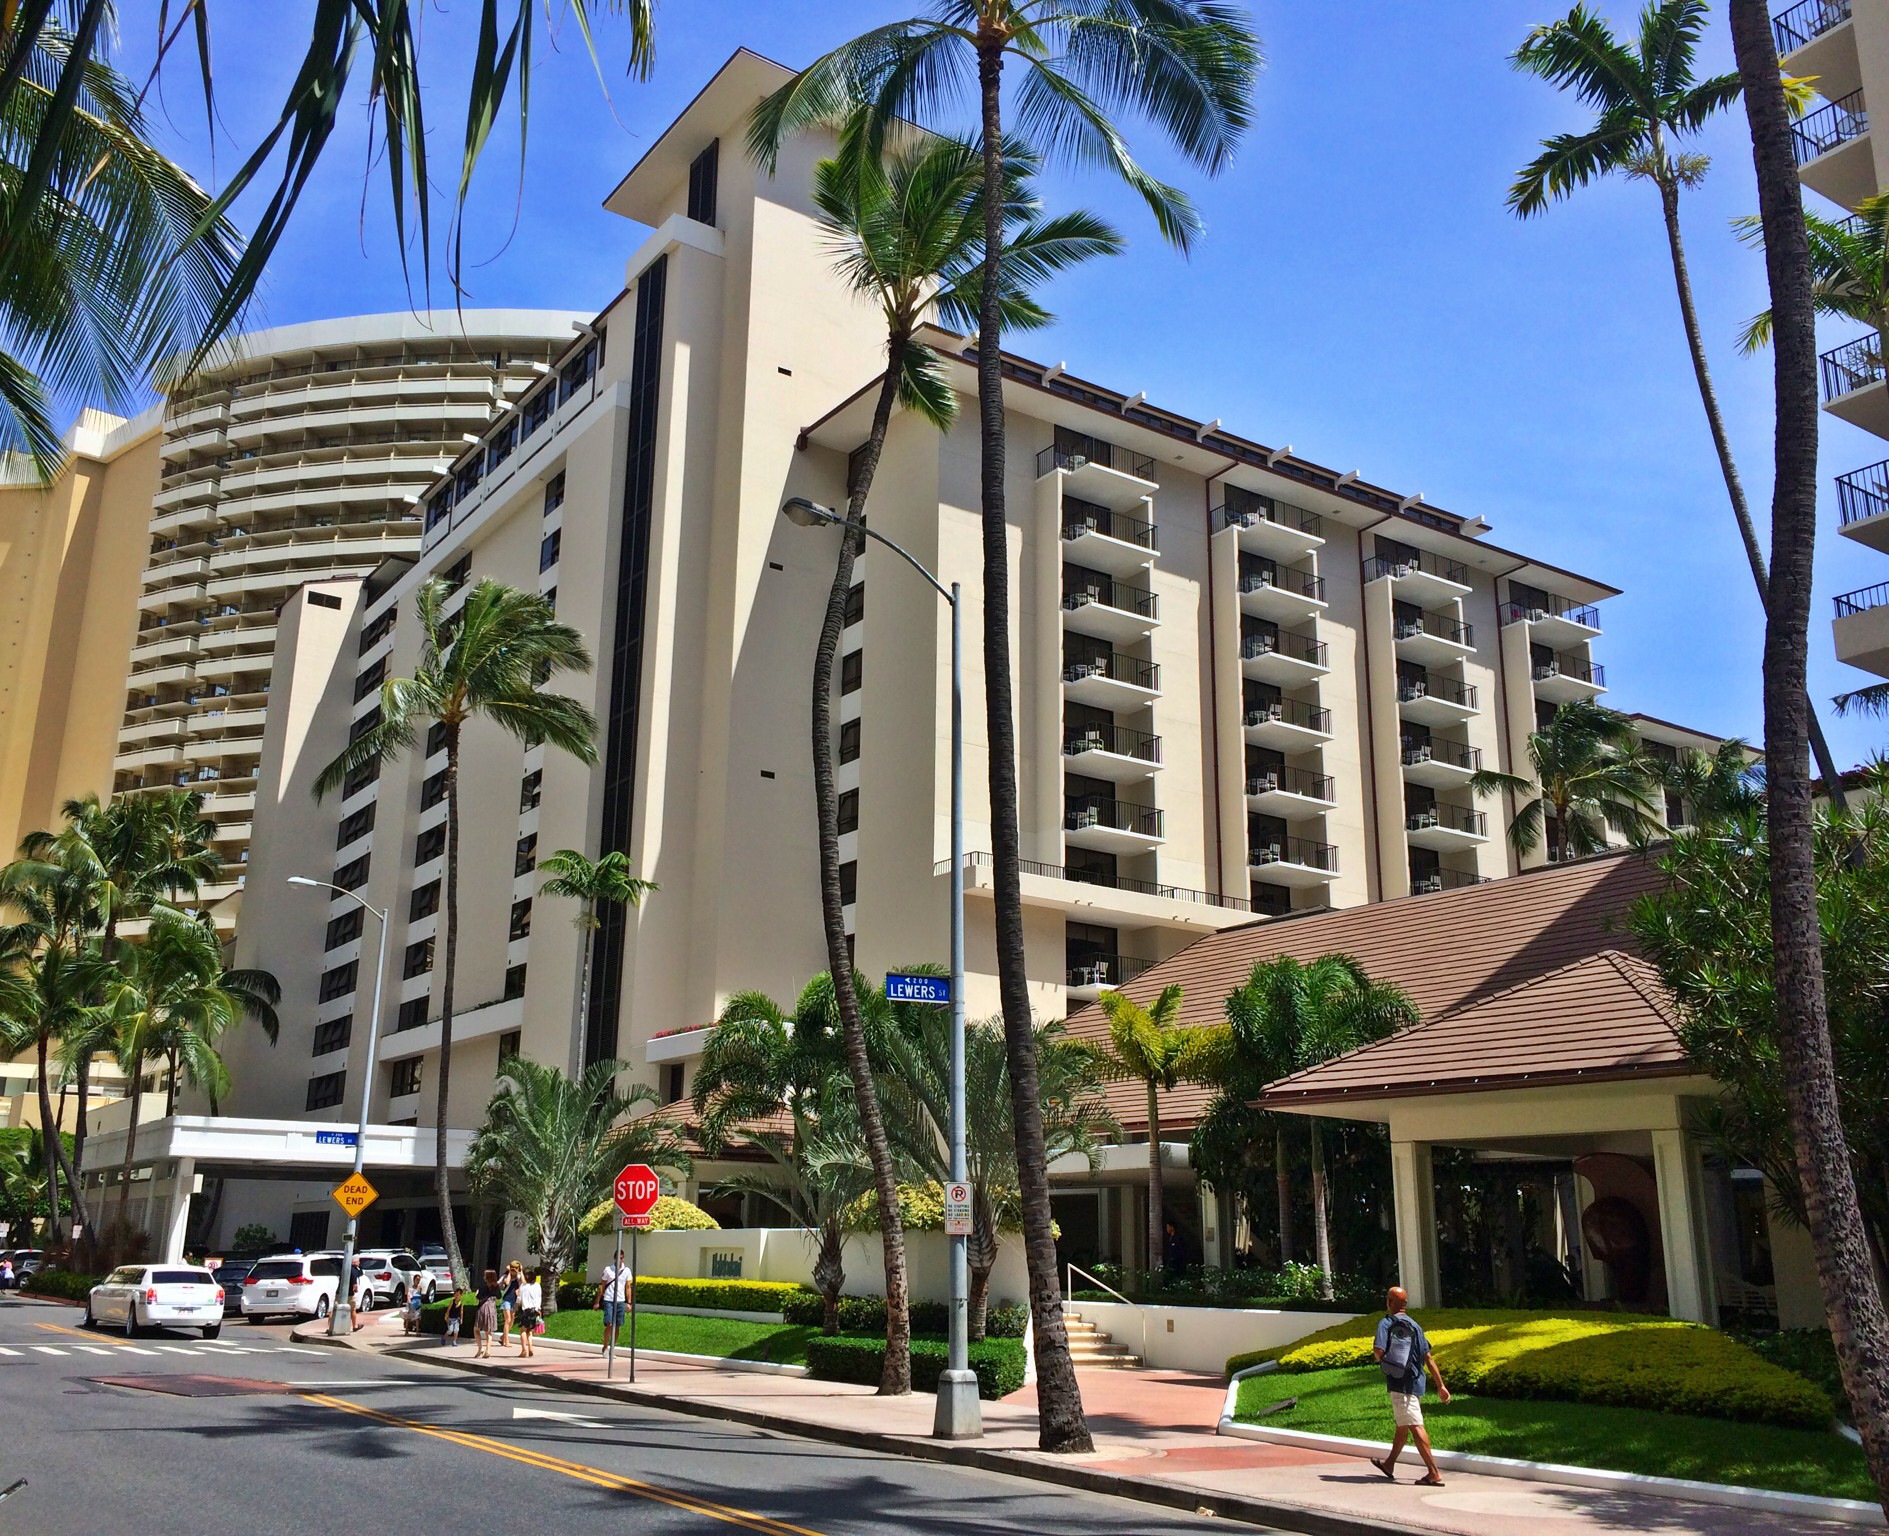 halekulani hotel hawaii